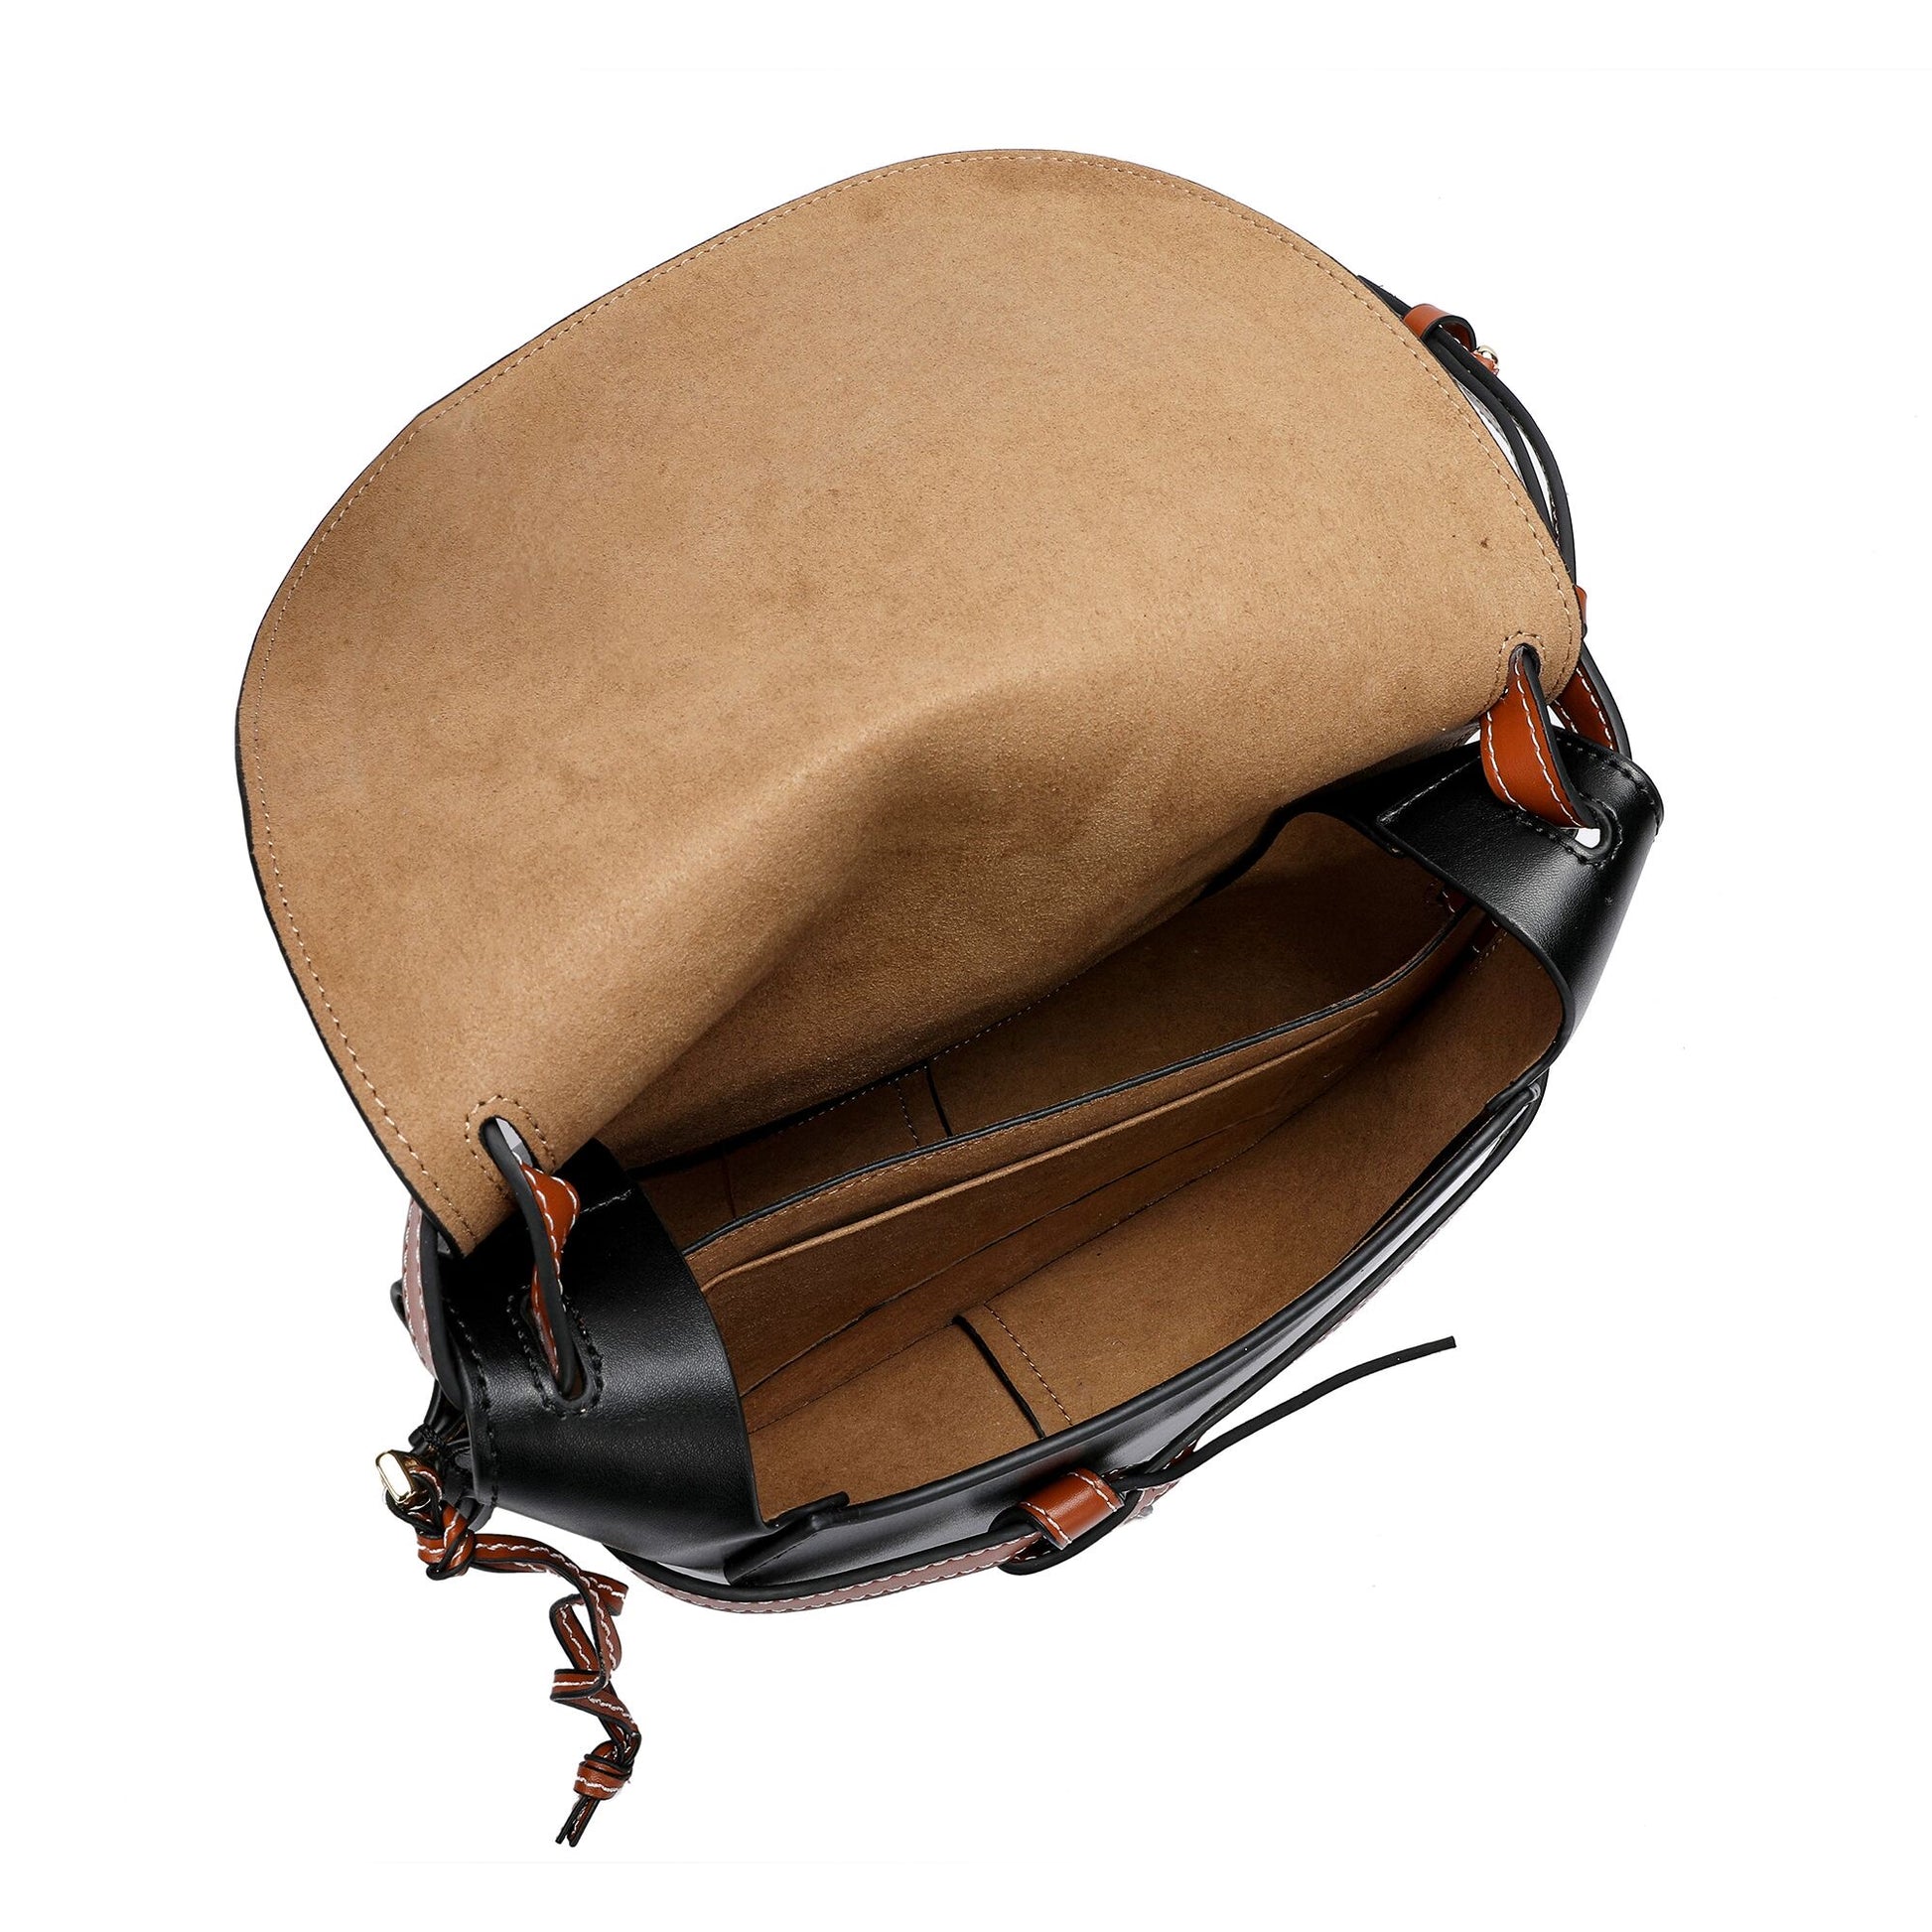 Semi-circle Bow-detailed Flap Messenger/ Shoulder Bag – Tiffany